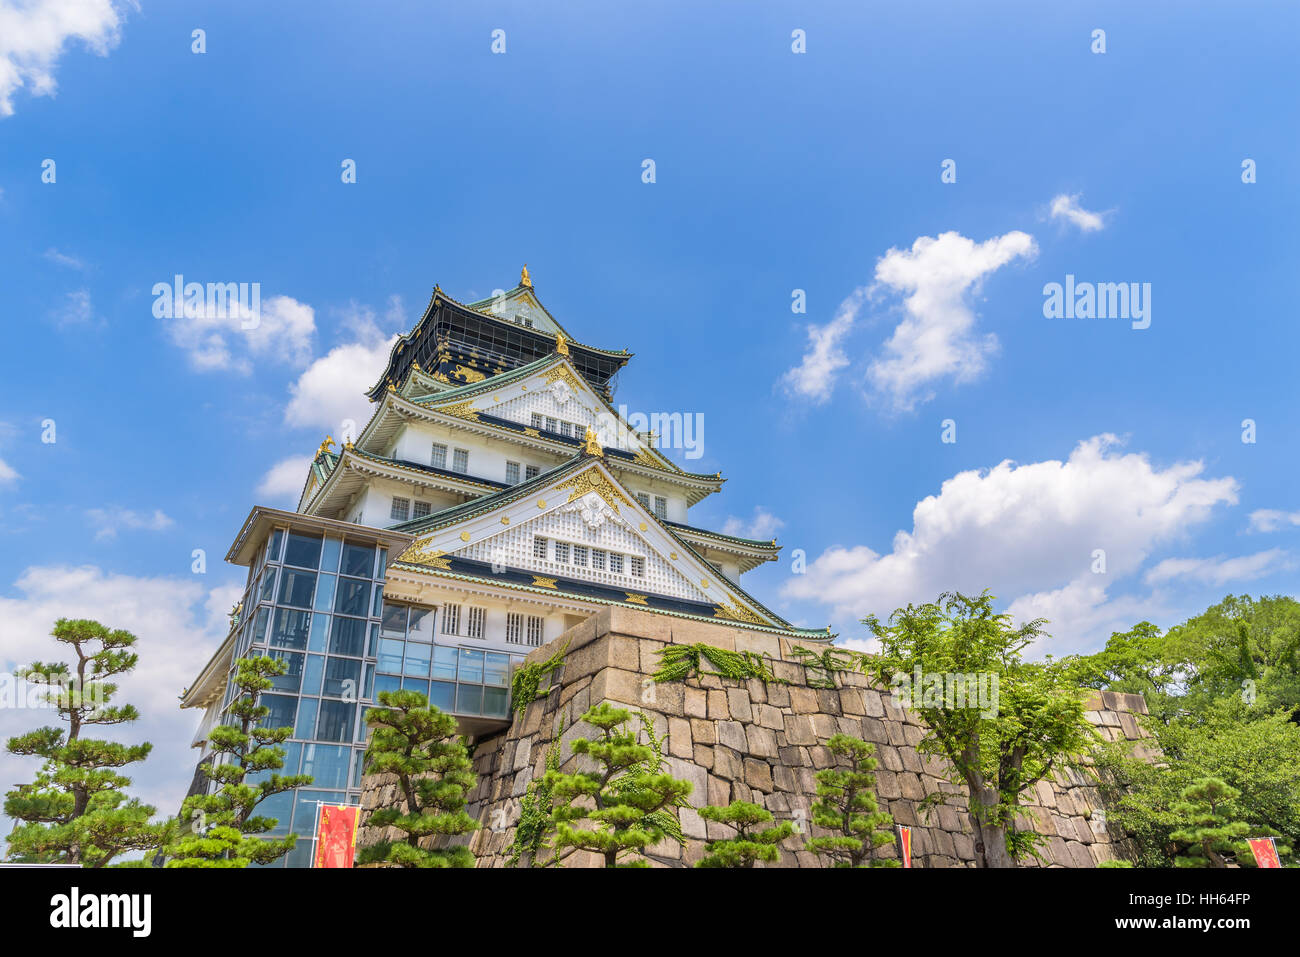 Osaka castle or Osaka-jo, the lanmark of Osaka in Japan Stock Photo